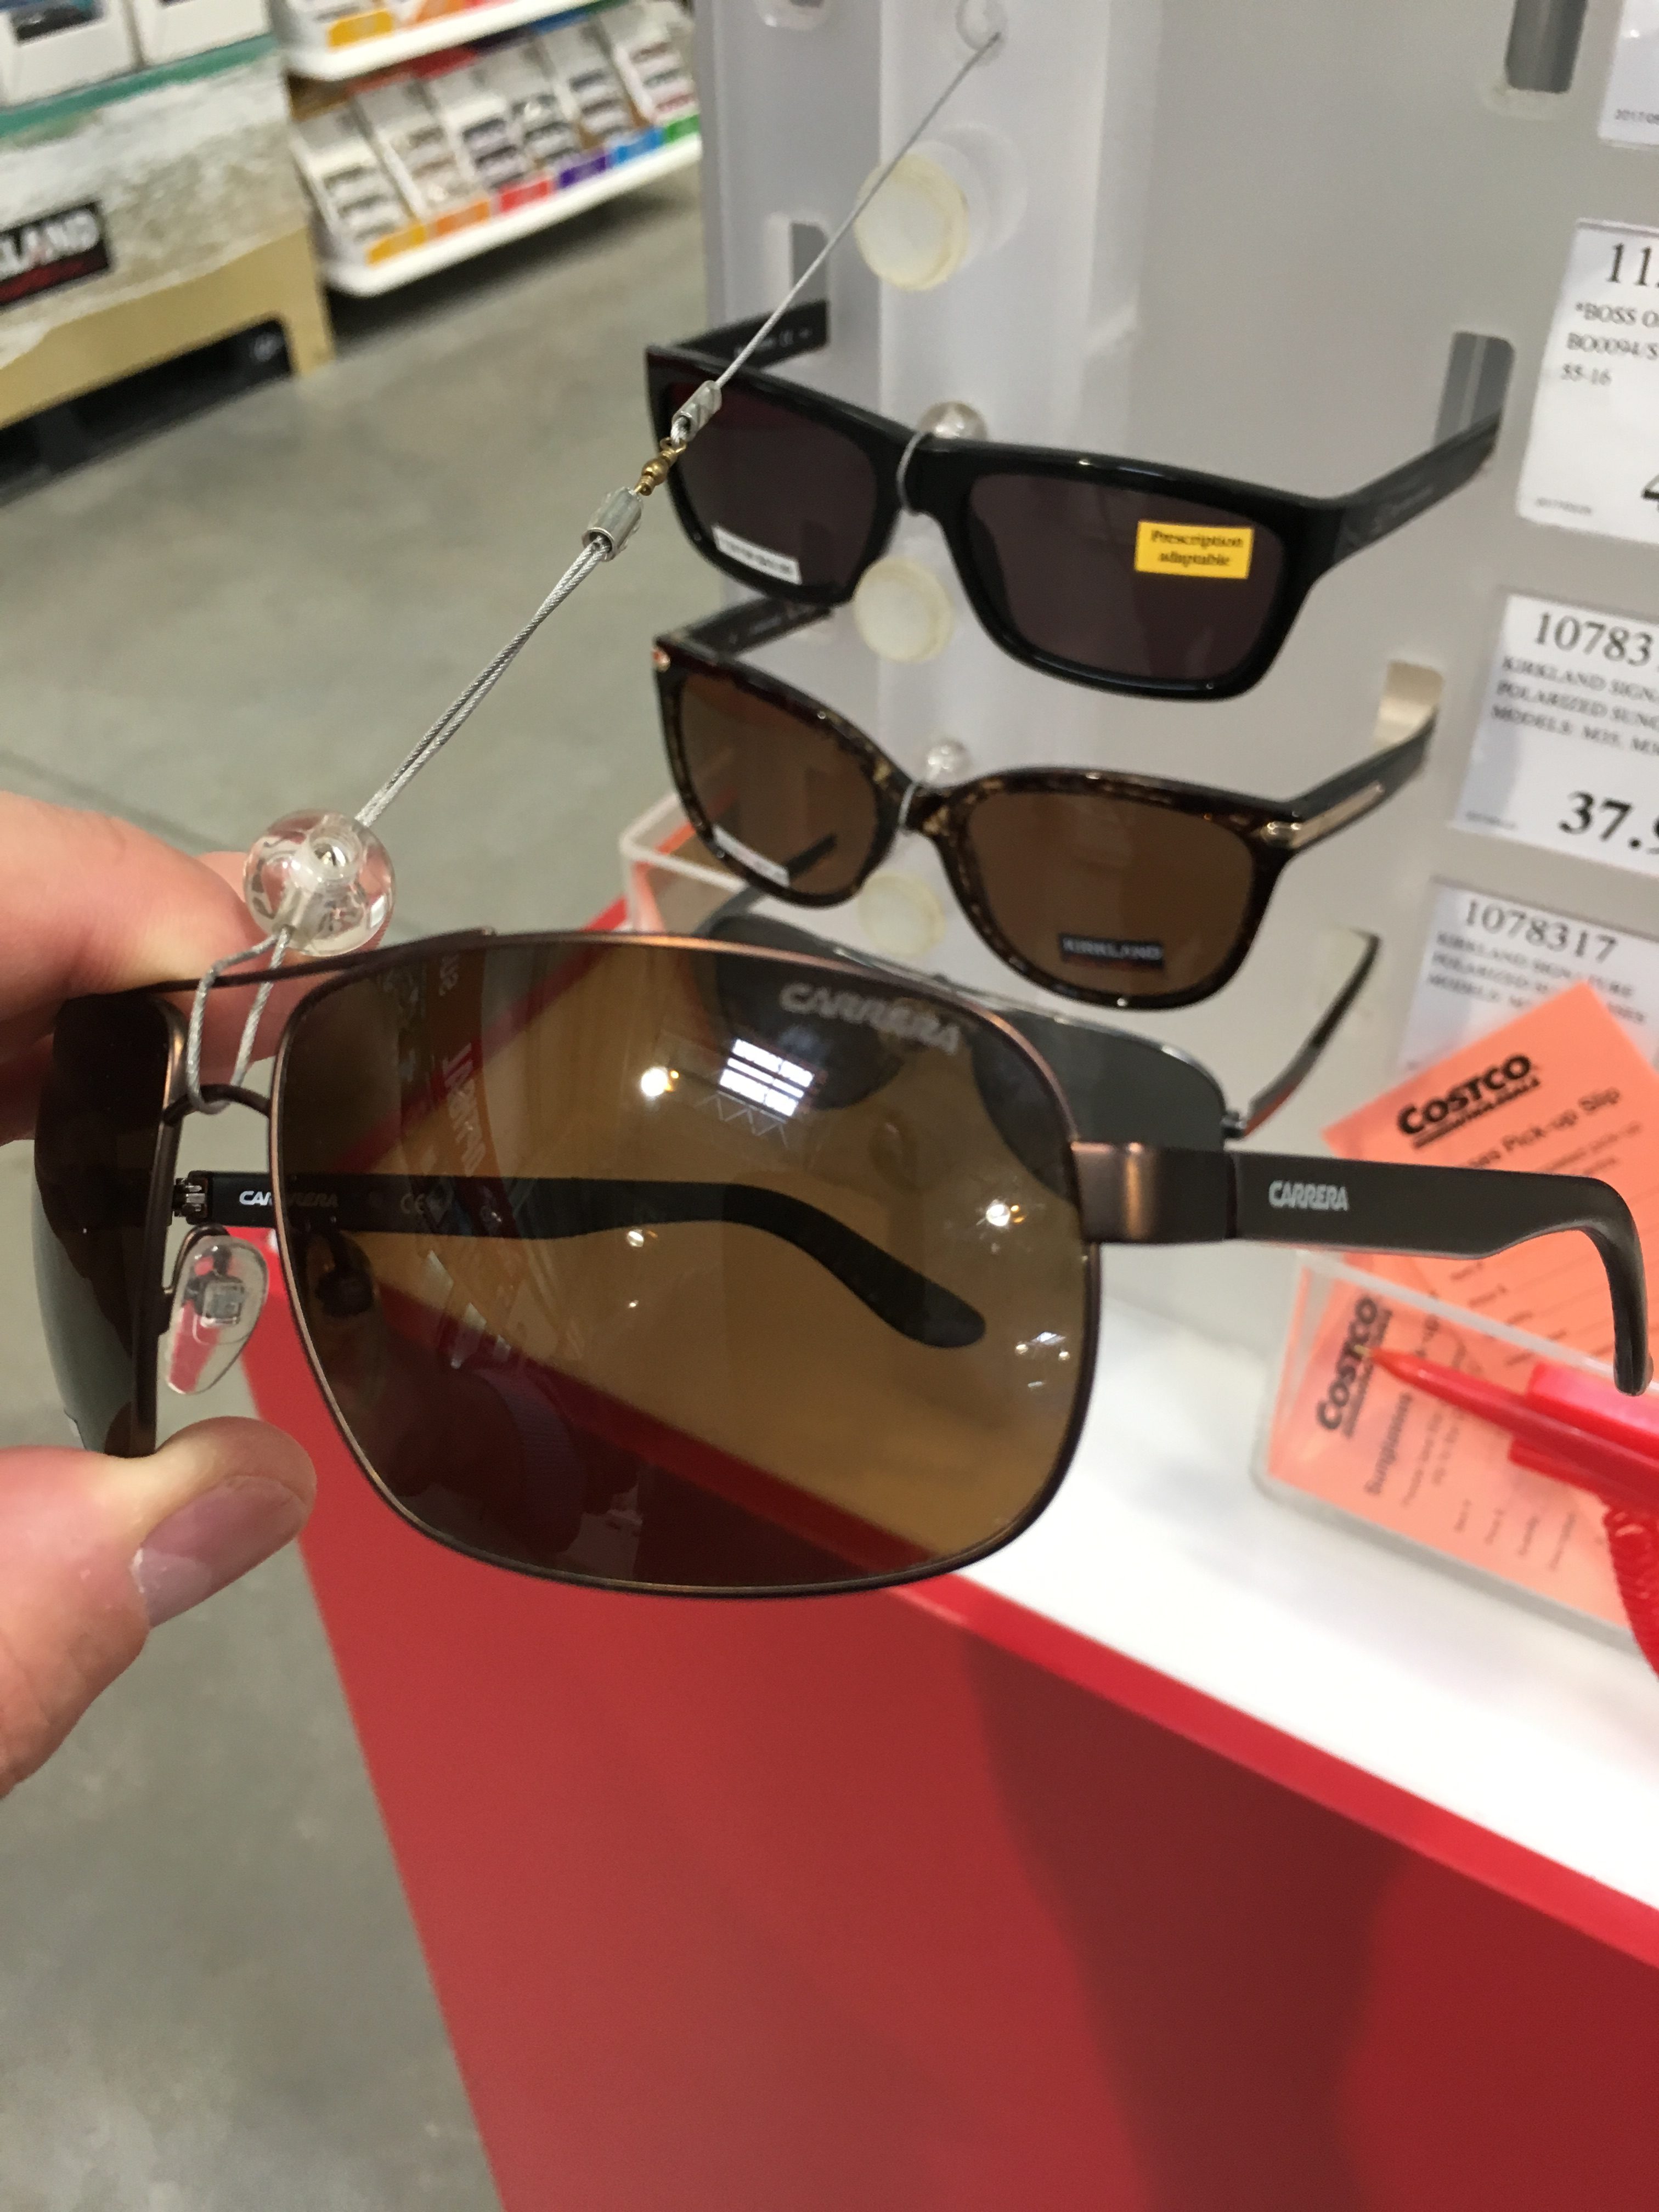 Costco] Carrera Polarized Sunglasses   Forums